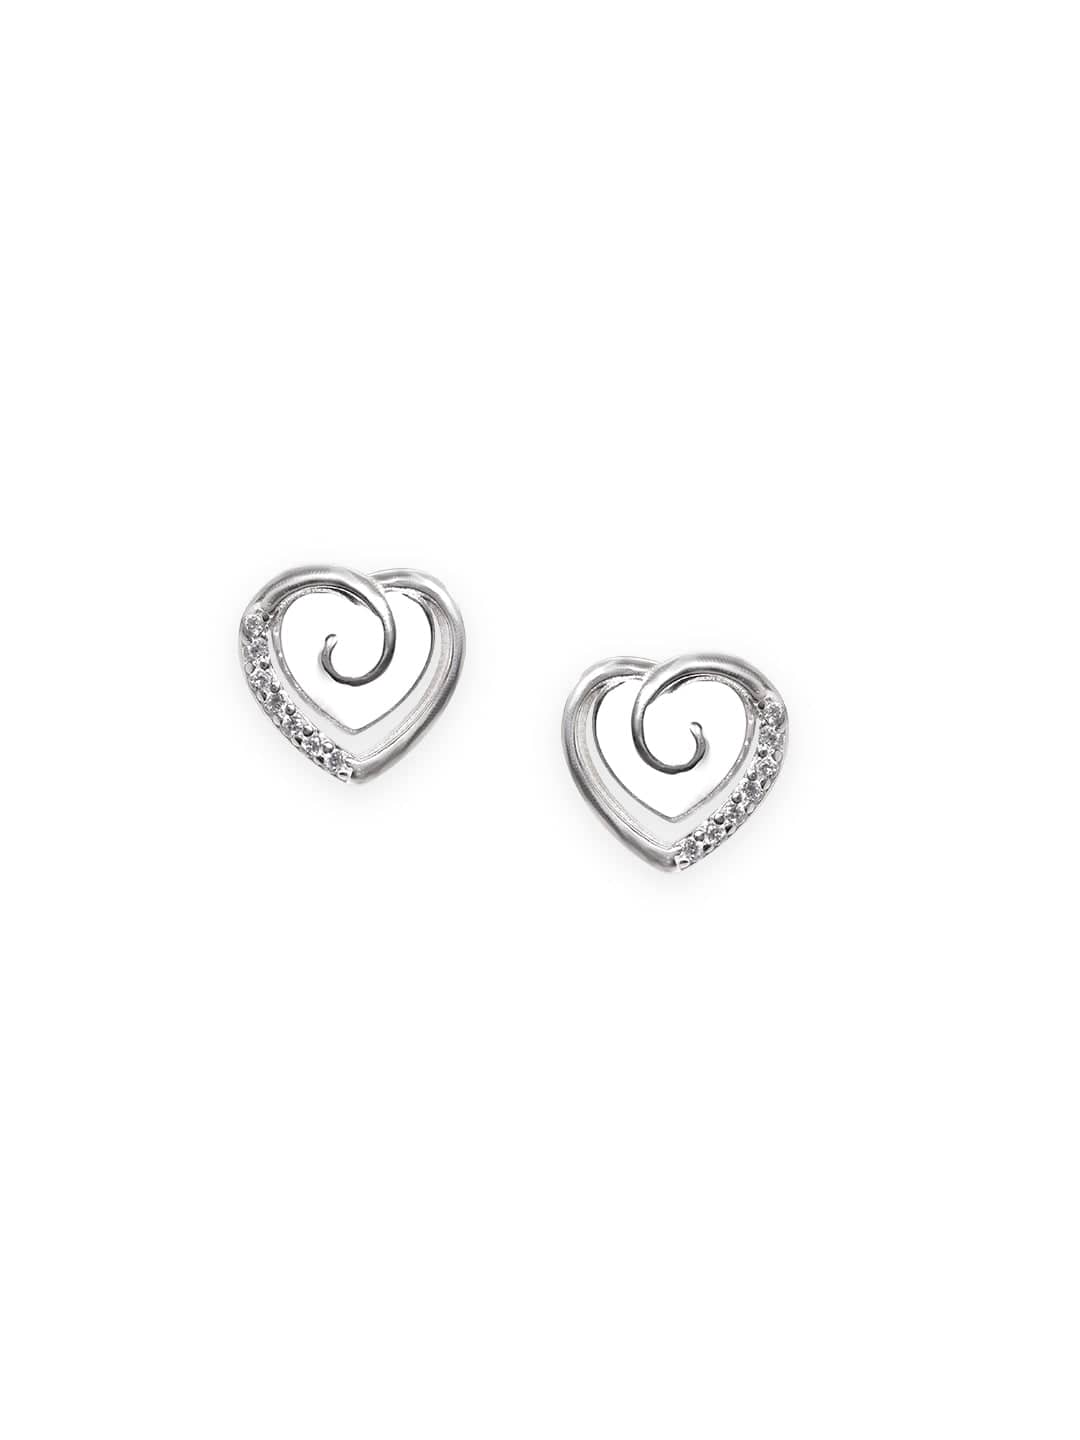 Sterling Silver Heart Stud Earrings Earrings